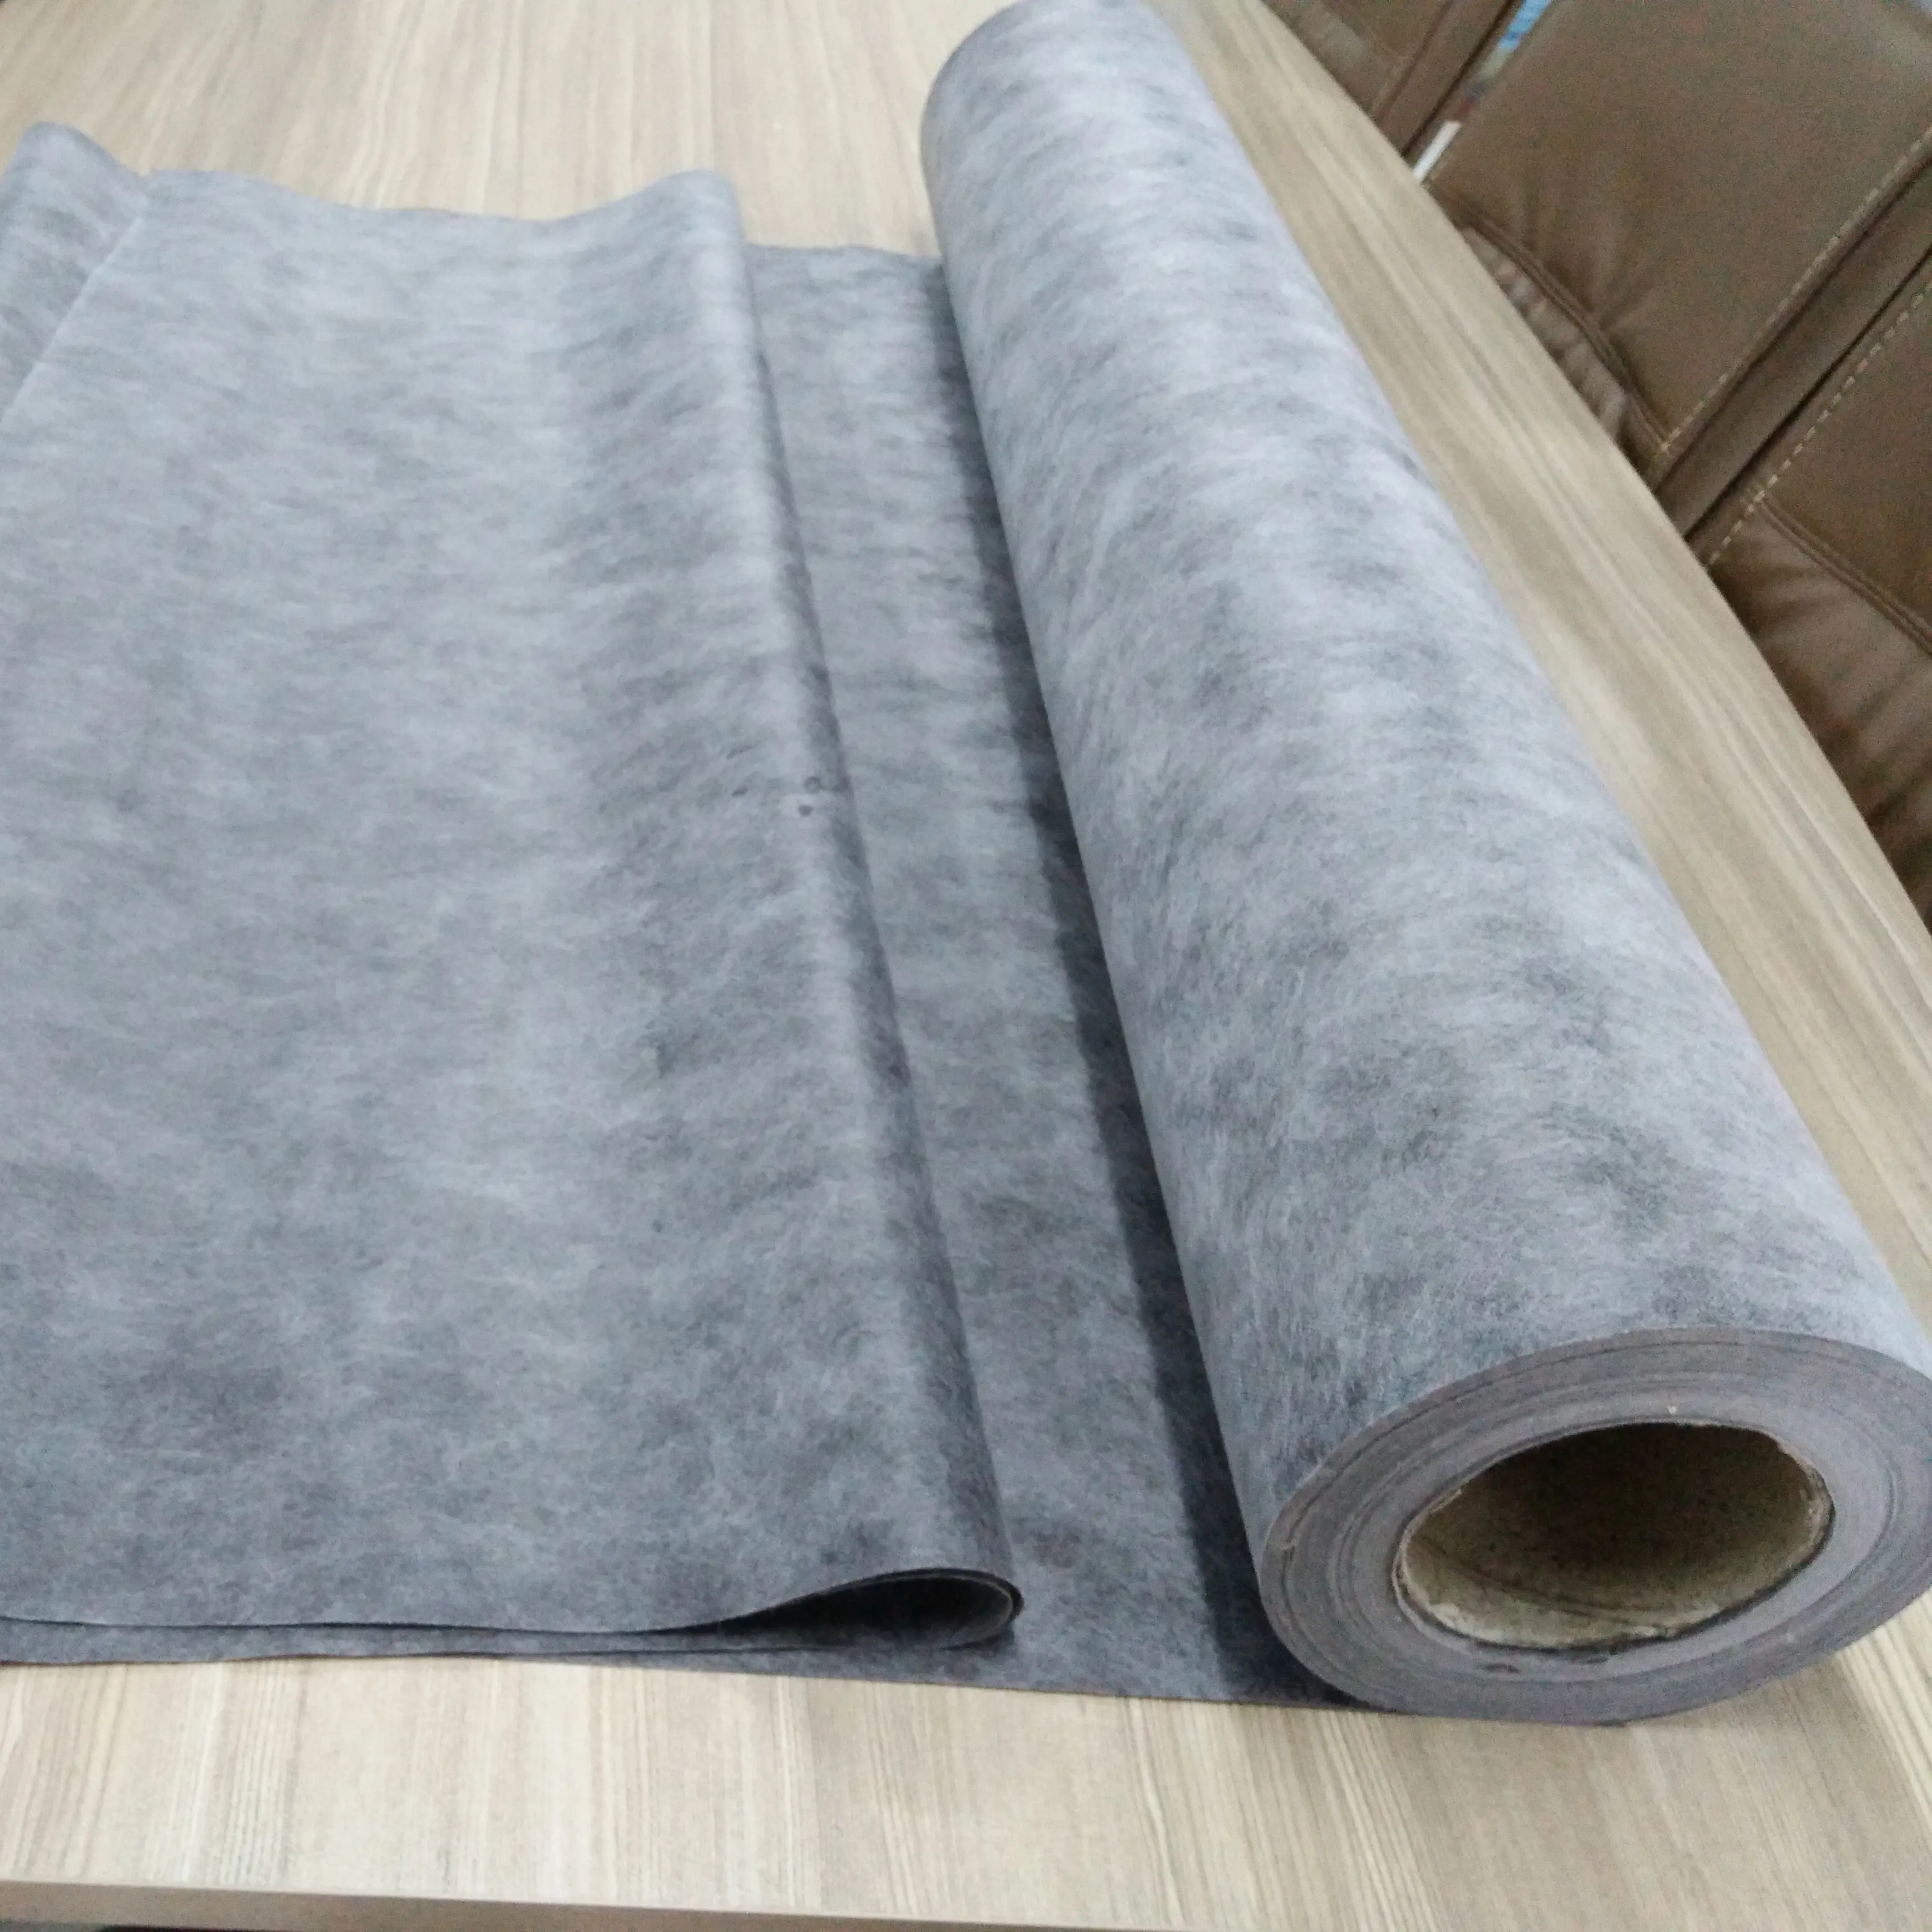 polypropylene waterproofing membrane for washroom shower liner